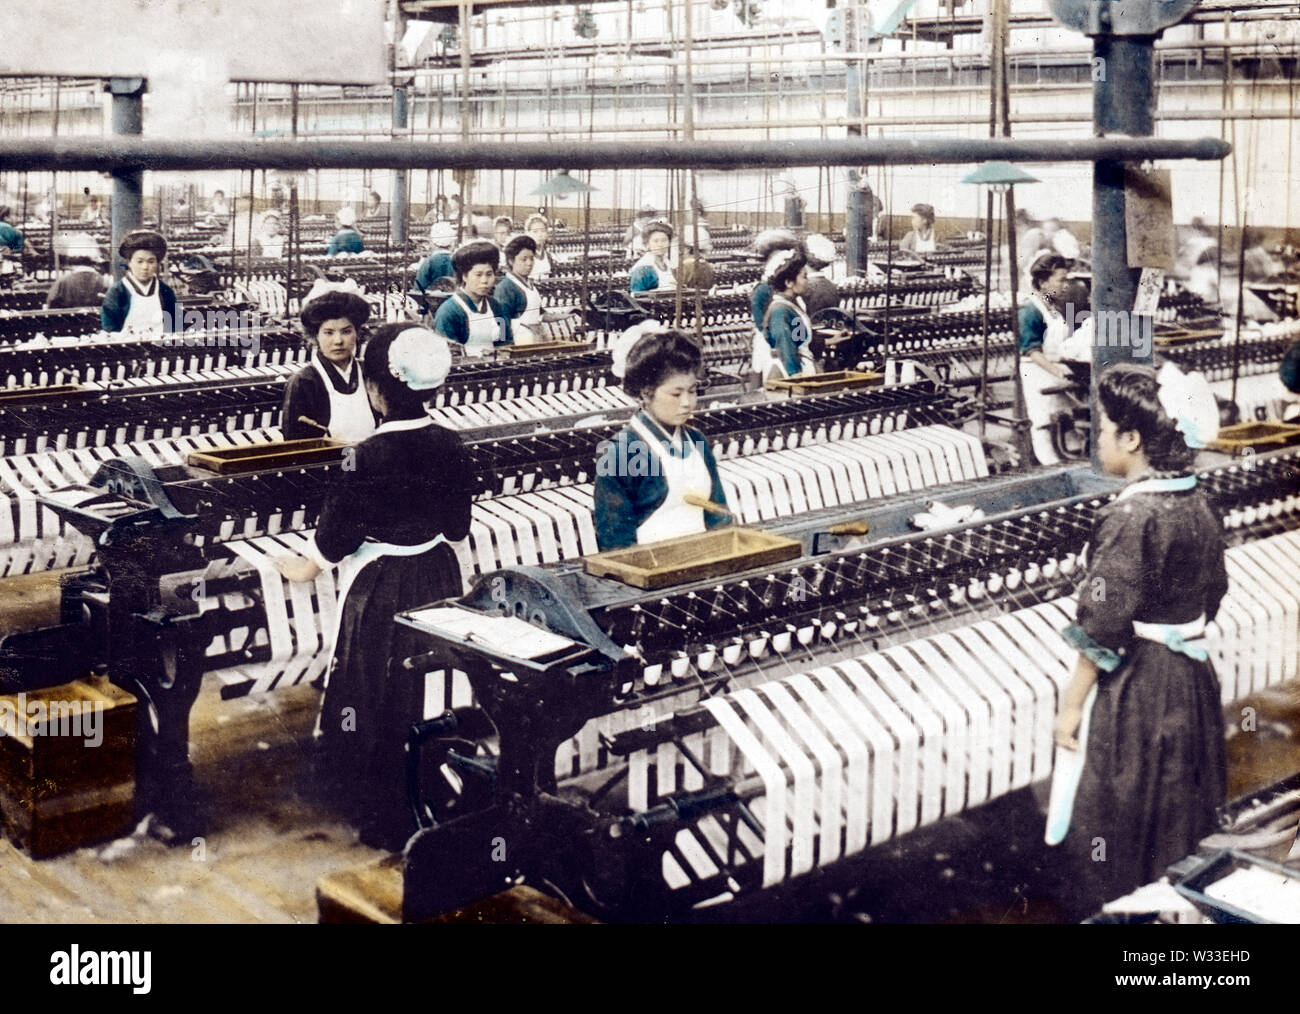 [1900s Japan - japanische Baumwolle spinnen Factory] - junge Frauen in Uniform im westlichen Stil an einem großen baumwollspinnerei Fabrik arbeiten. 20. Jahrhundert vintage Glas schieben. Stockfoto